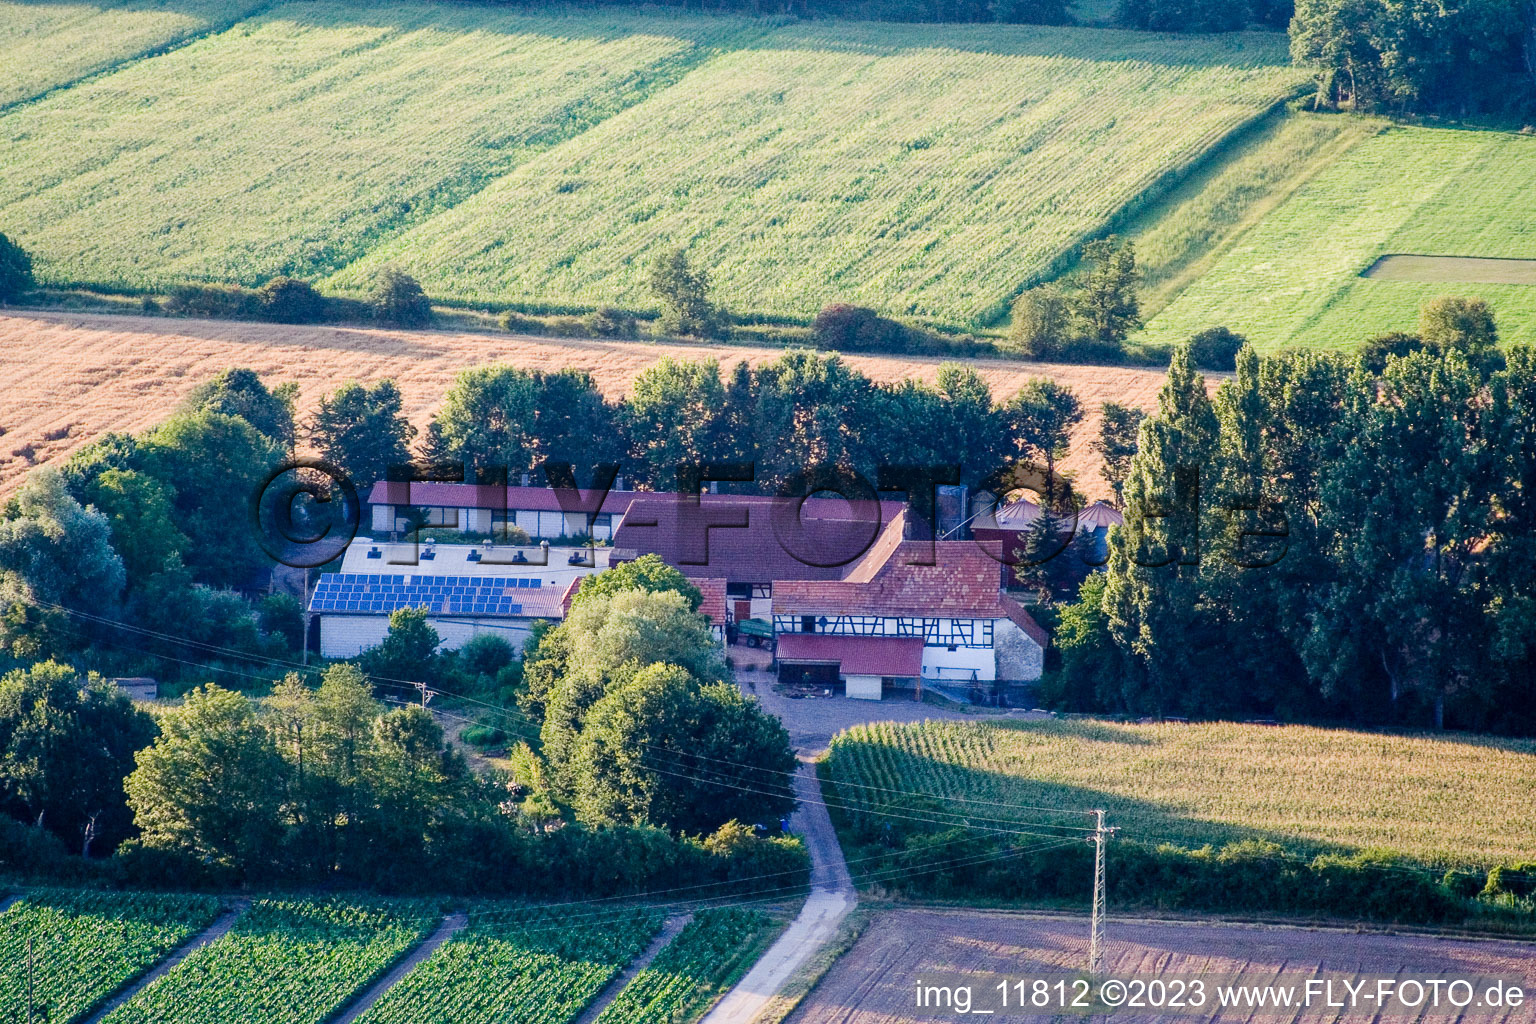 Luftbild von Kandel, am Erlenbach, Leistenmühle im Bundesland Rheinland-Pfalz, Deutschland